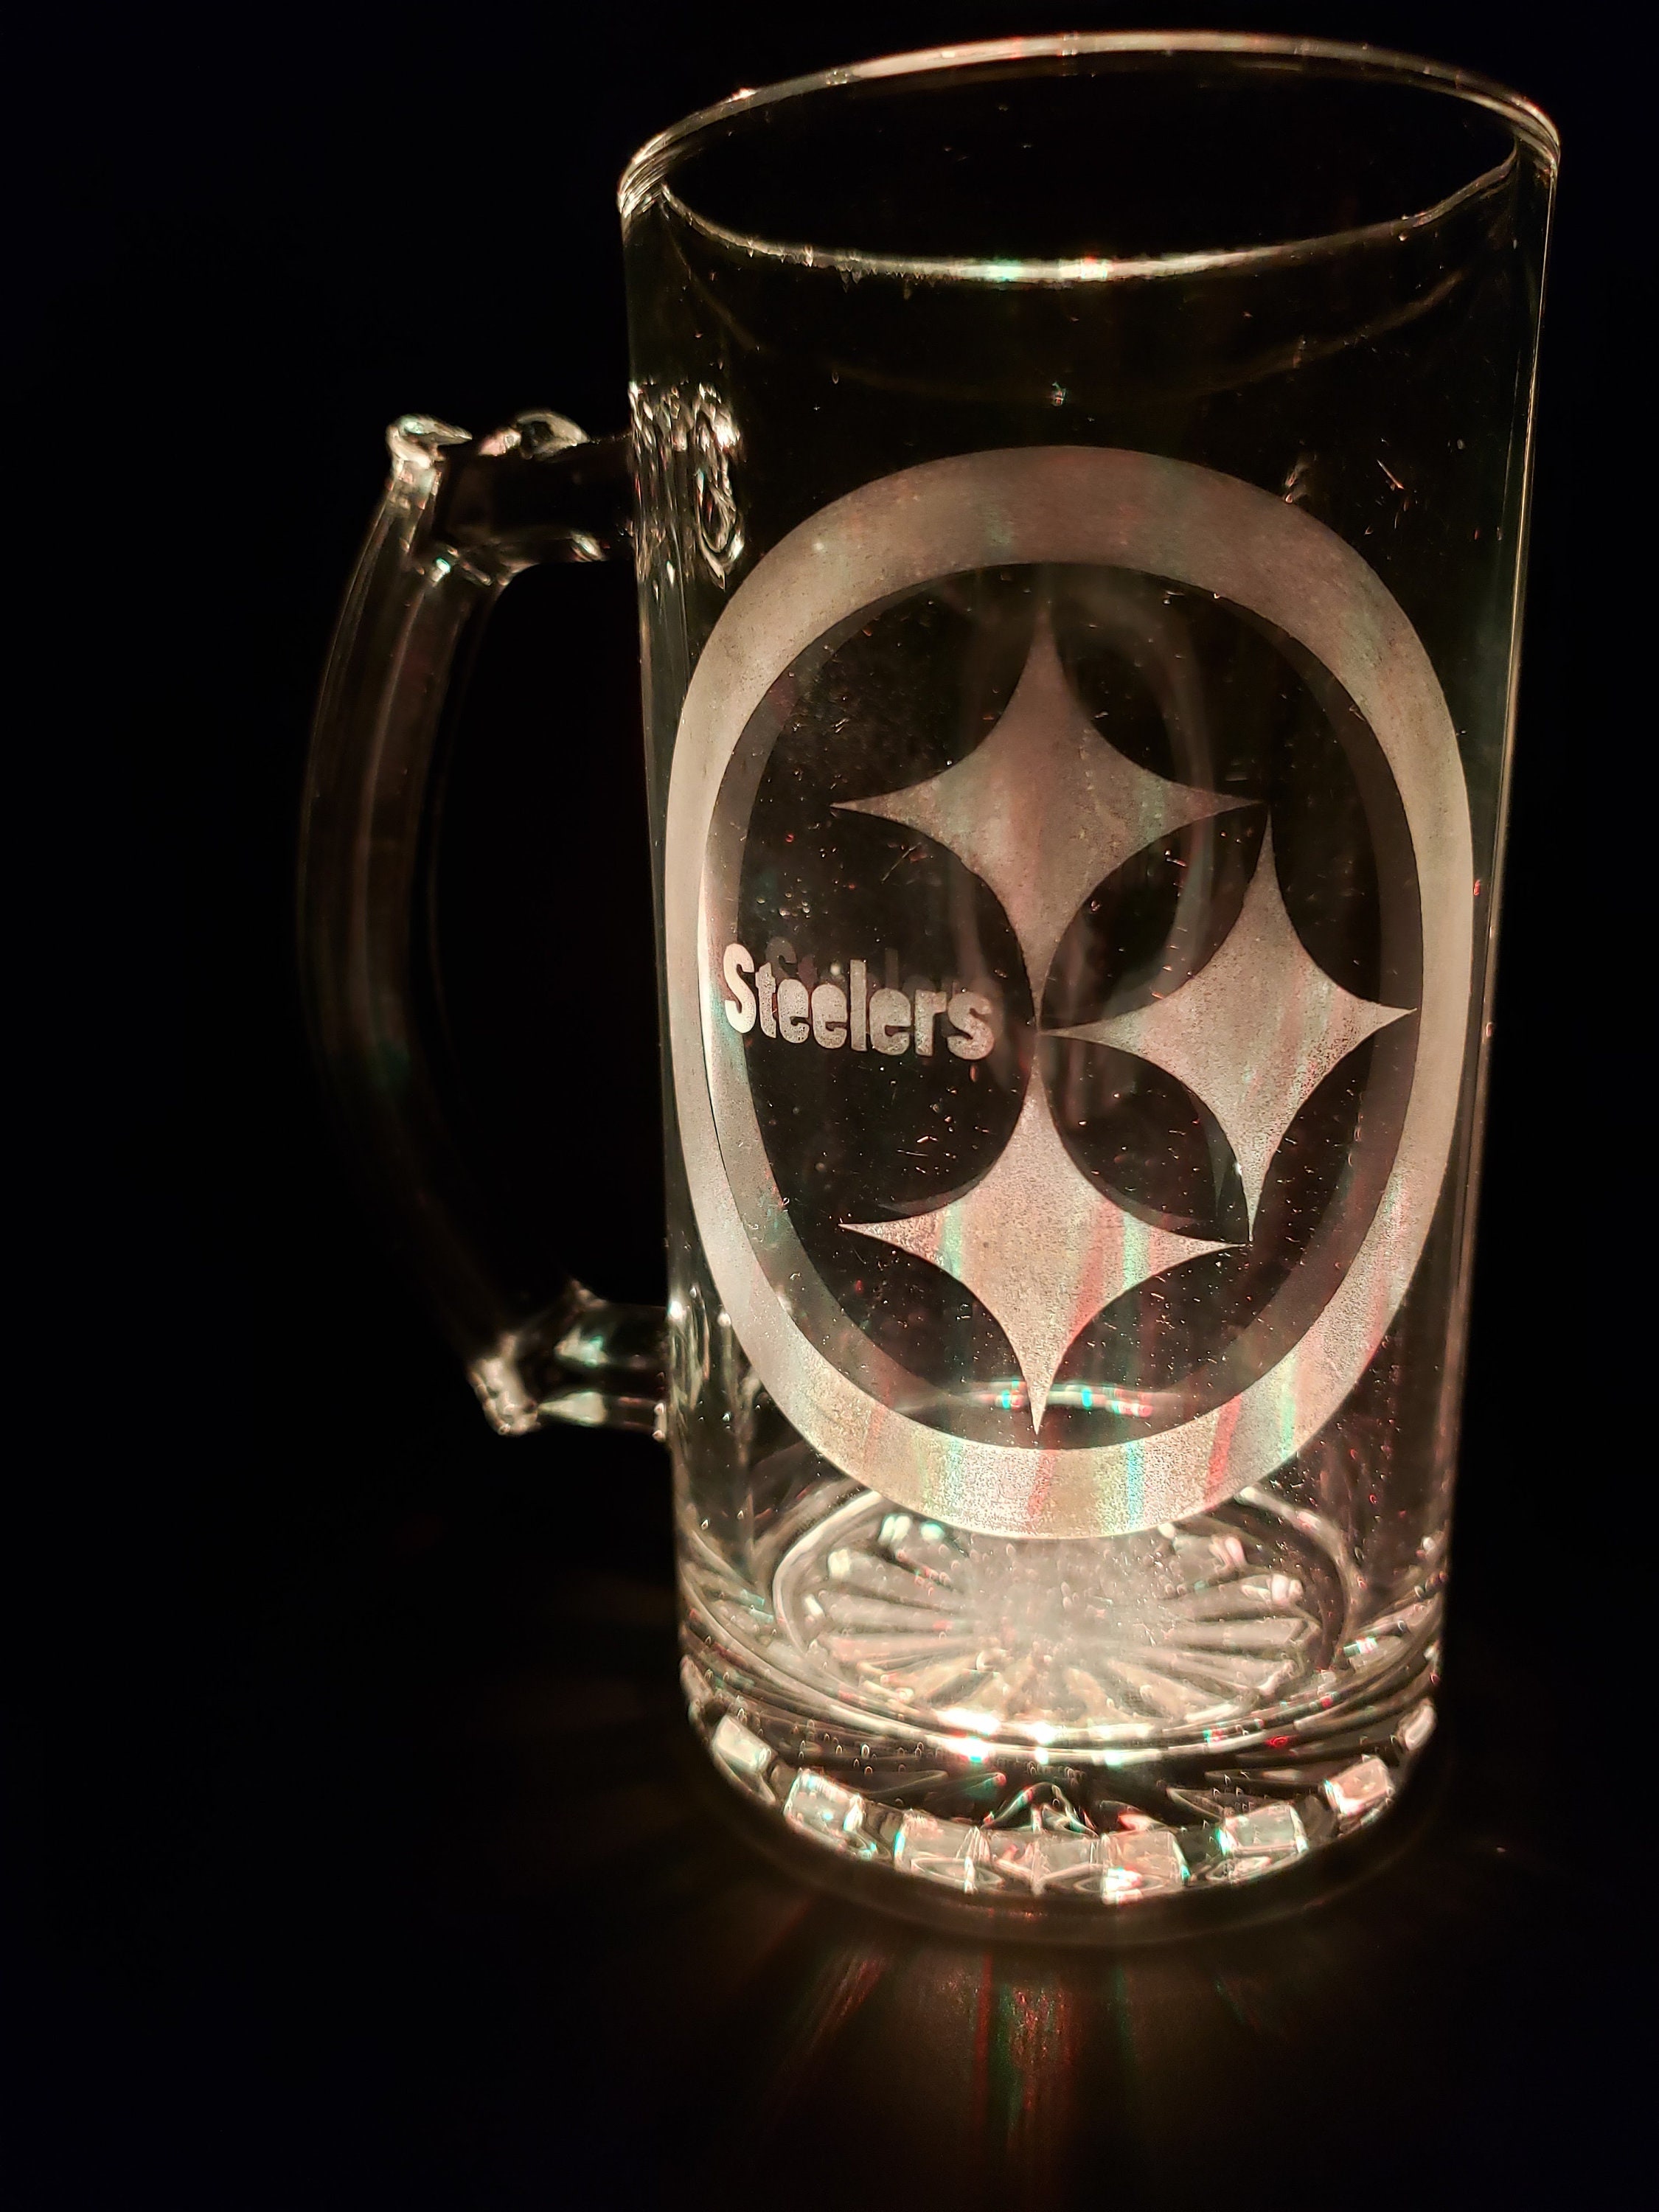 Pittsburgh Steelers Beer Mug American Football Gifts Stainless 